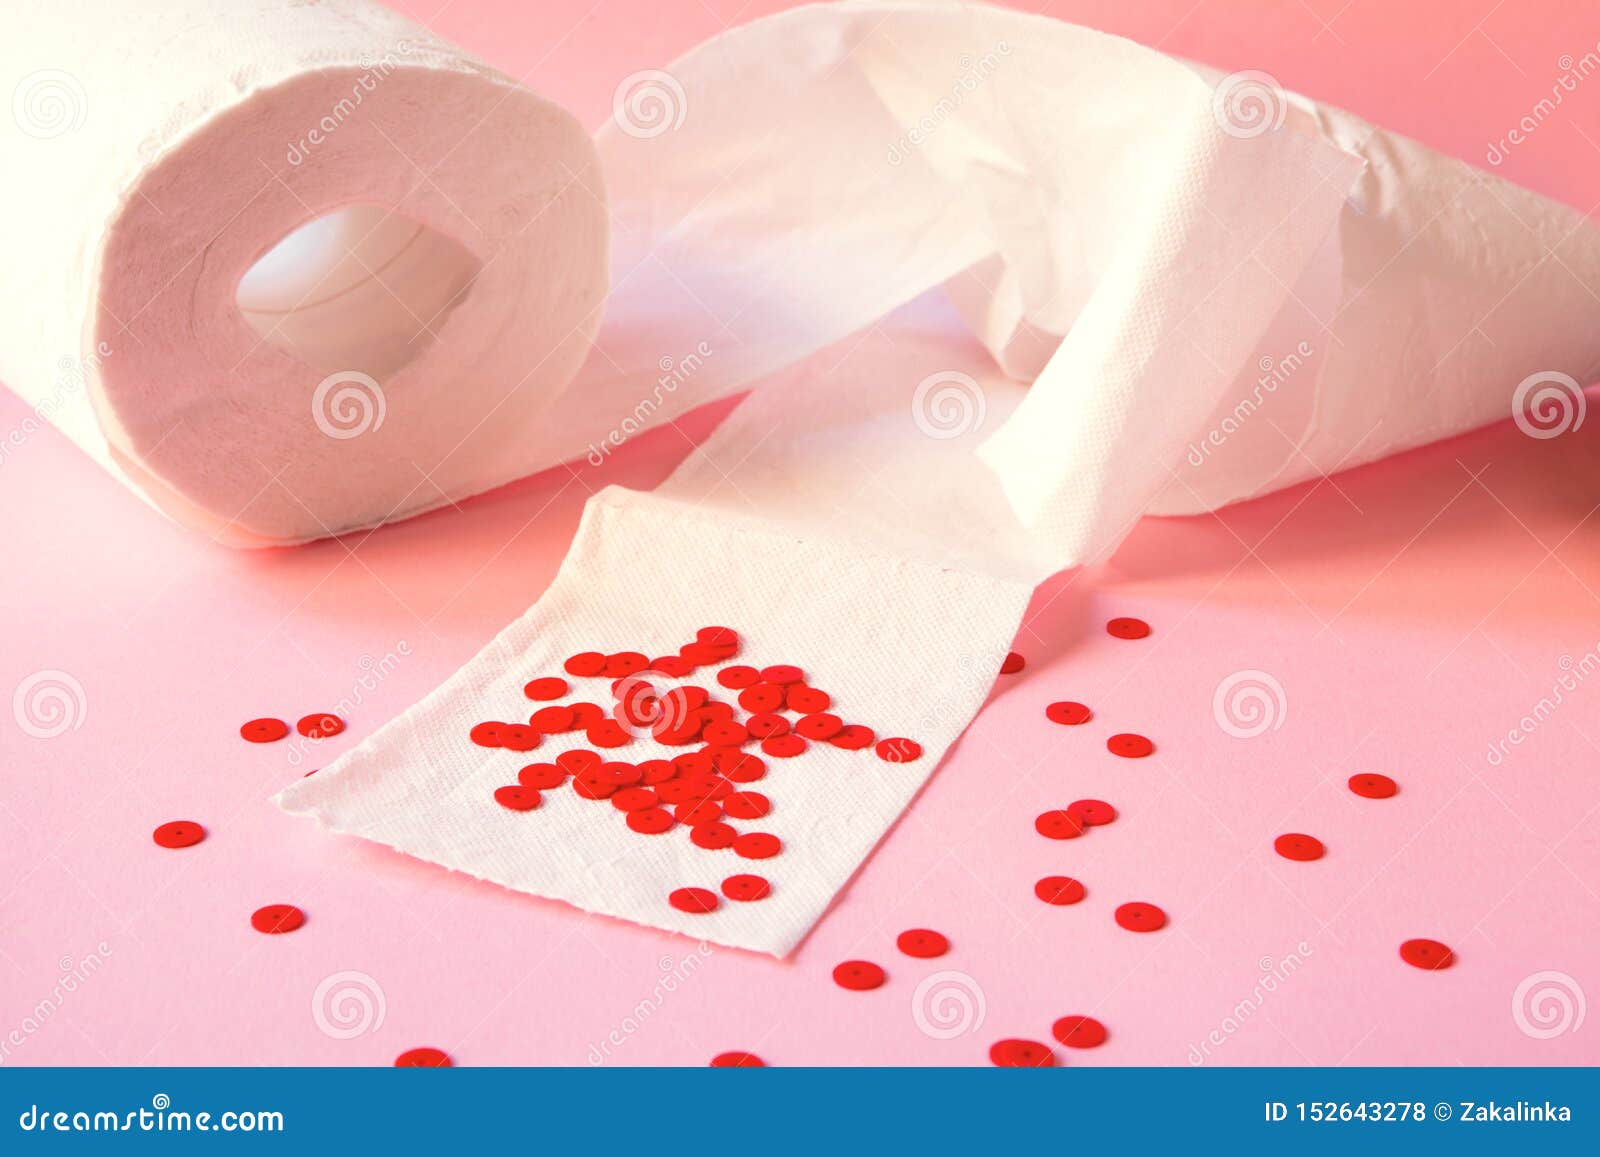 Кровь после вытирания бумагой